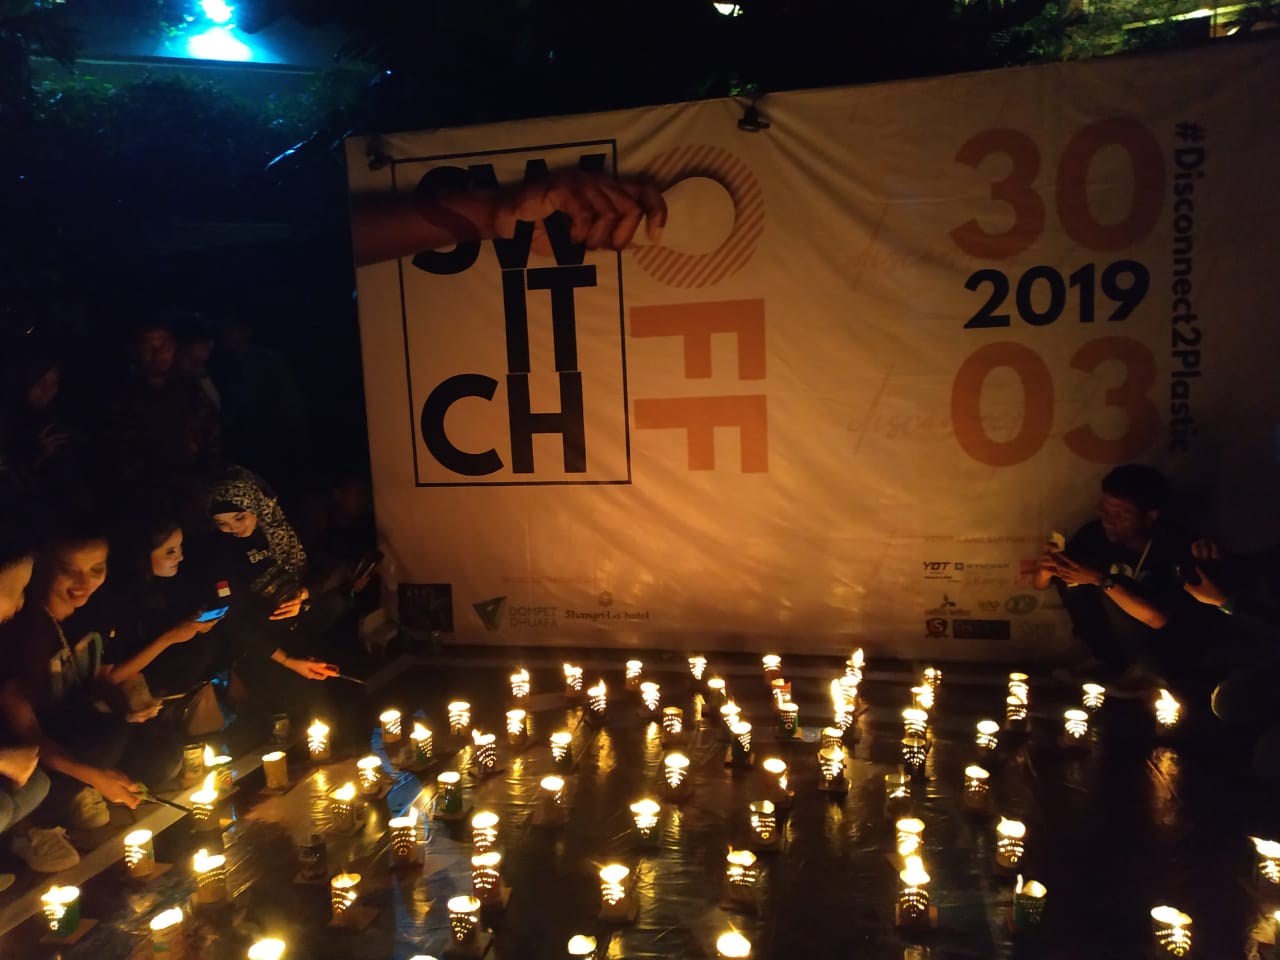 Pengiat Earth Hour di Surabaya saat menyalakan lilindi area kolam renang hotel Shangri-la. Sabtu, 30 Maret 2019. (Foto: istimewa) 